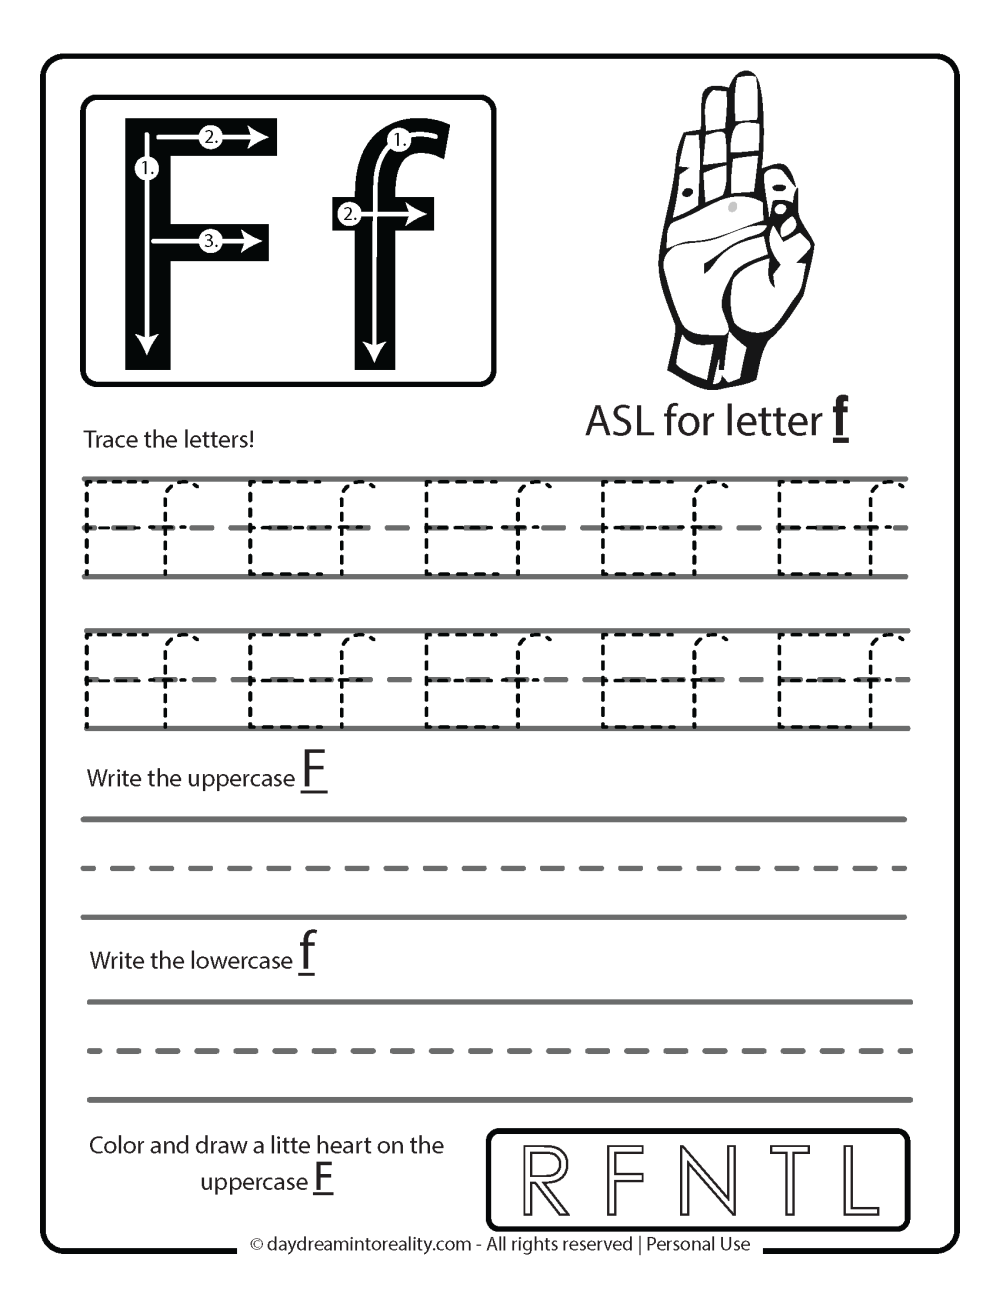 ASL Worksheet for Letter F Free Printable